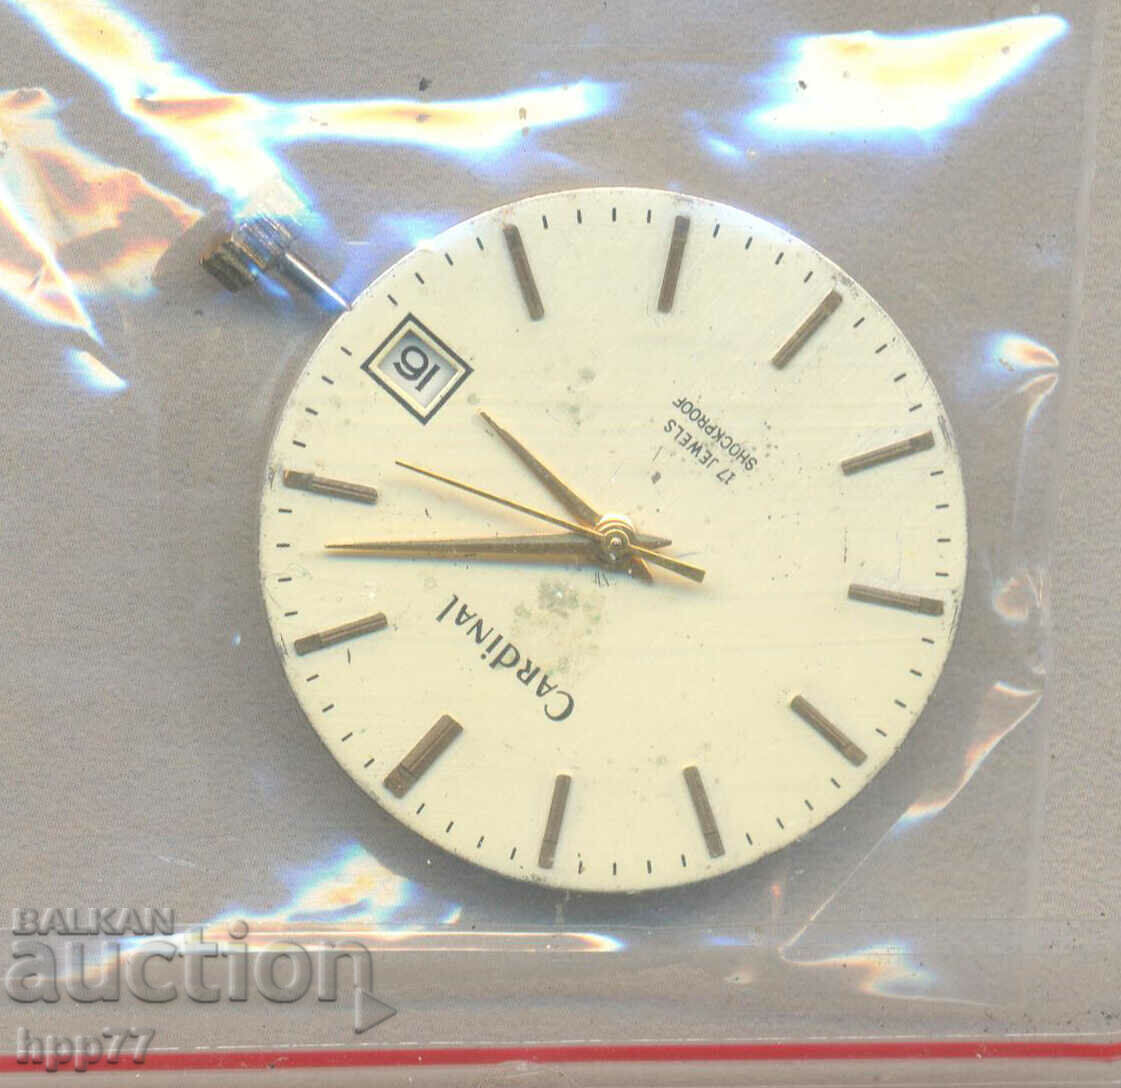 70 clock mechanism